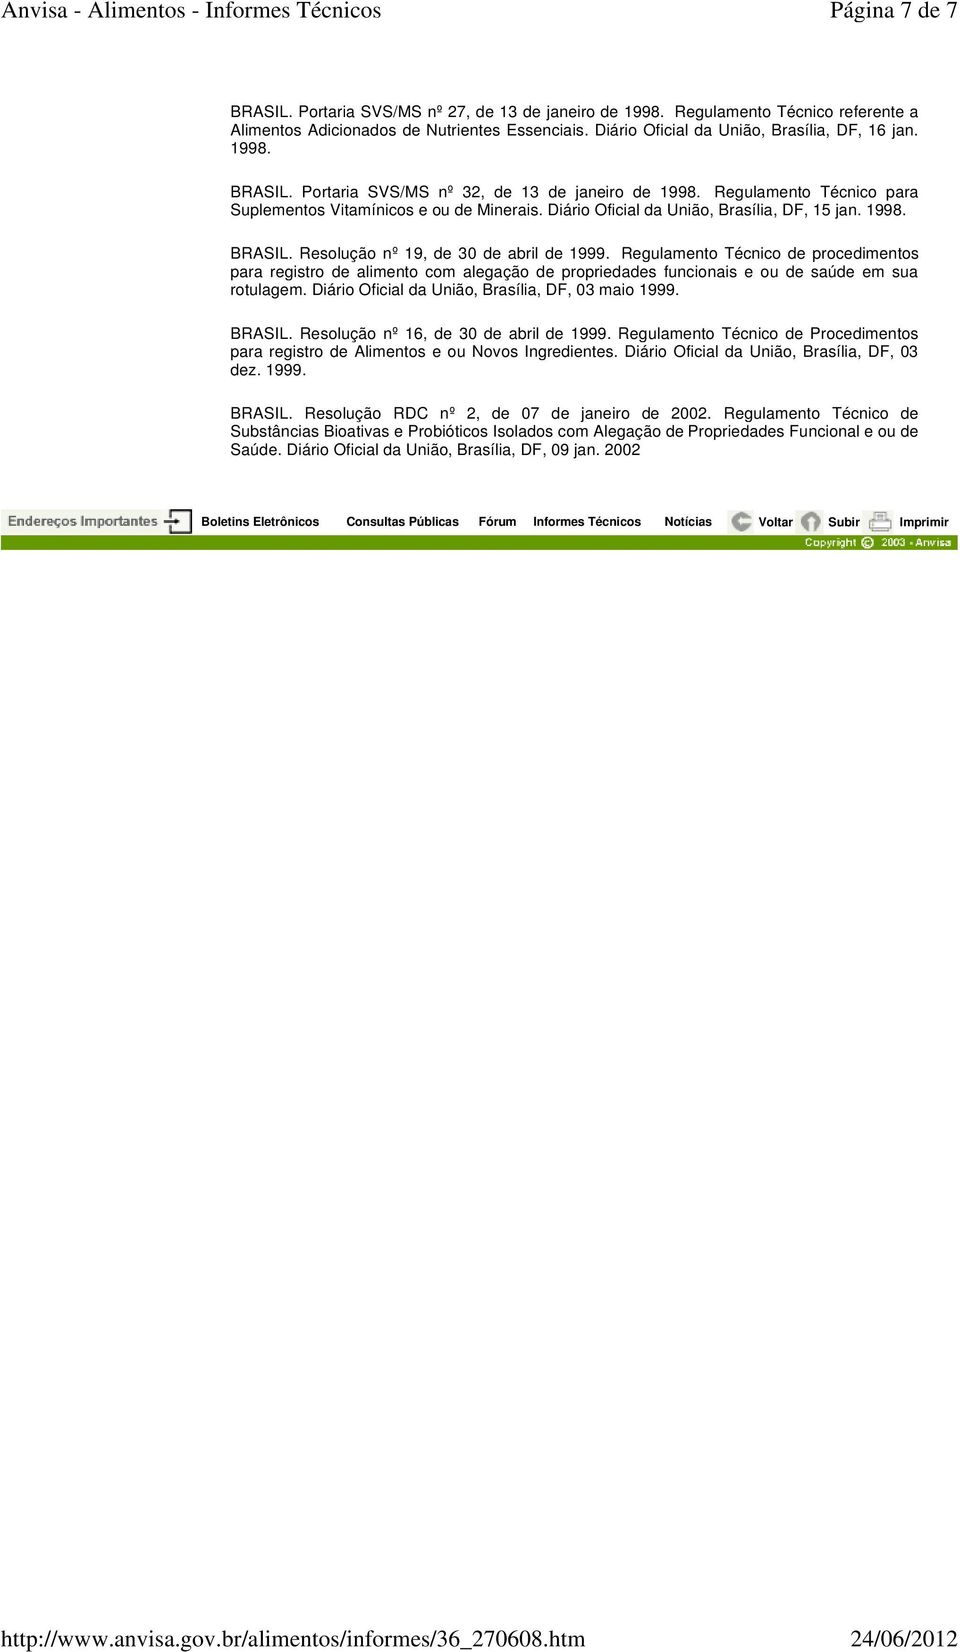 Regulamento Técnico de procedimentos para registro de alimento com alegação de propriedades funcionais e ou de saúde em sua rotulagem. Diário Oficial da União, Brasília, DF, 03 maio 1999. BRASIL.